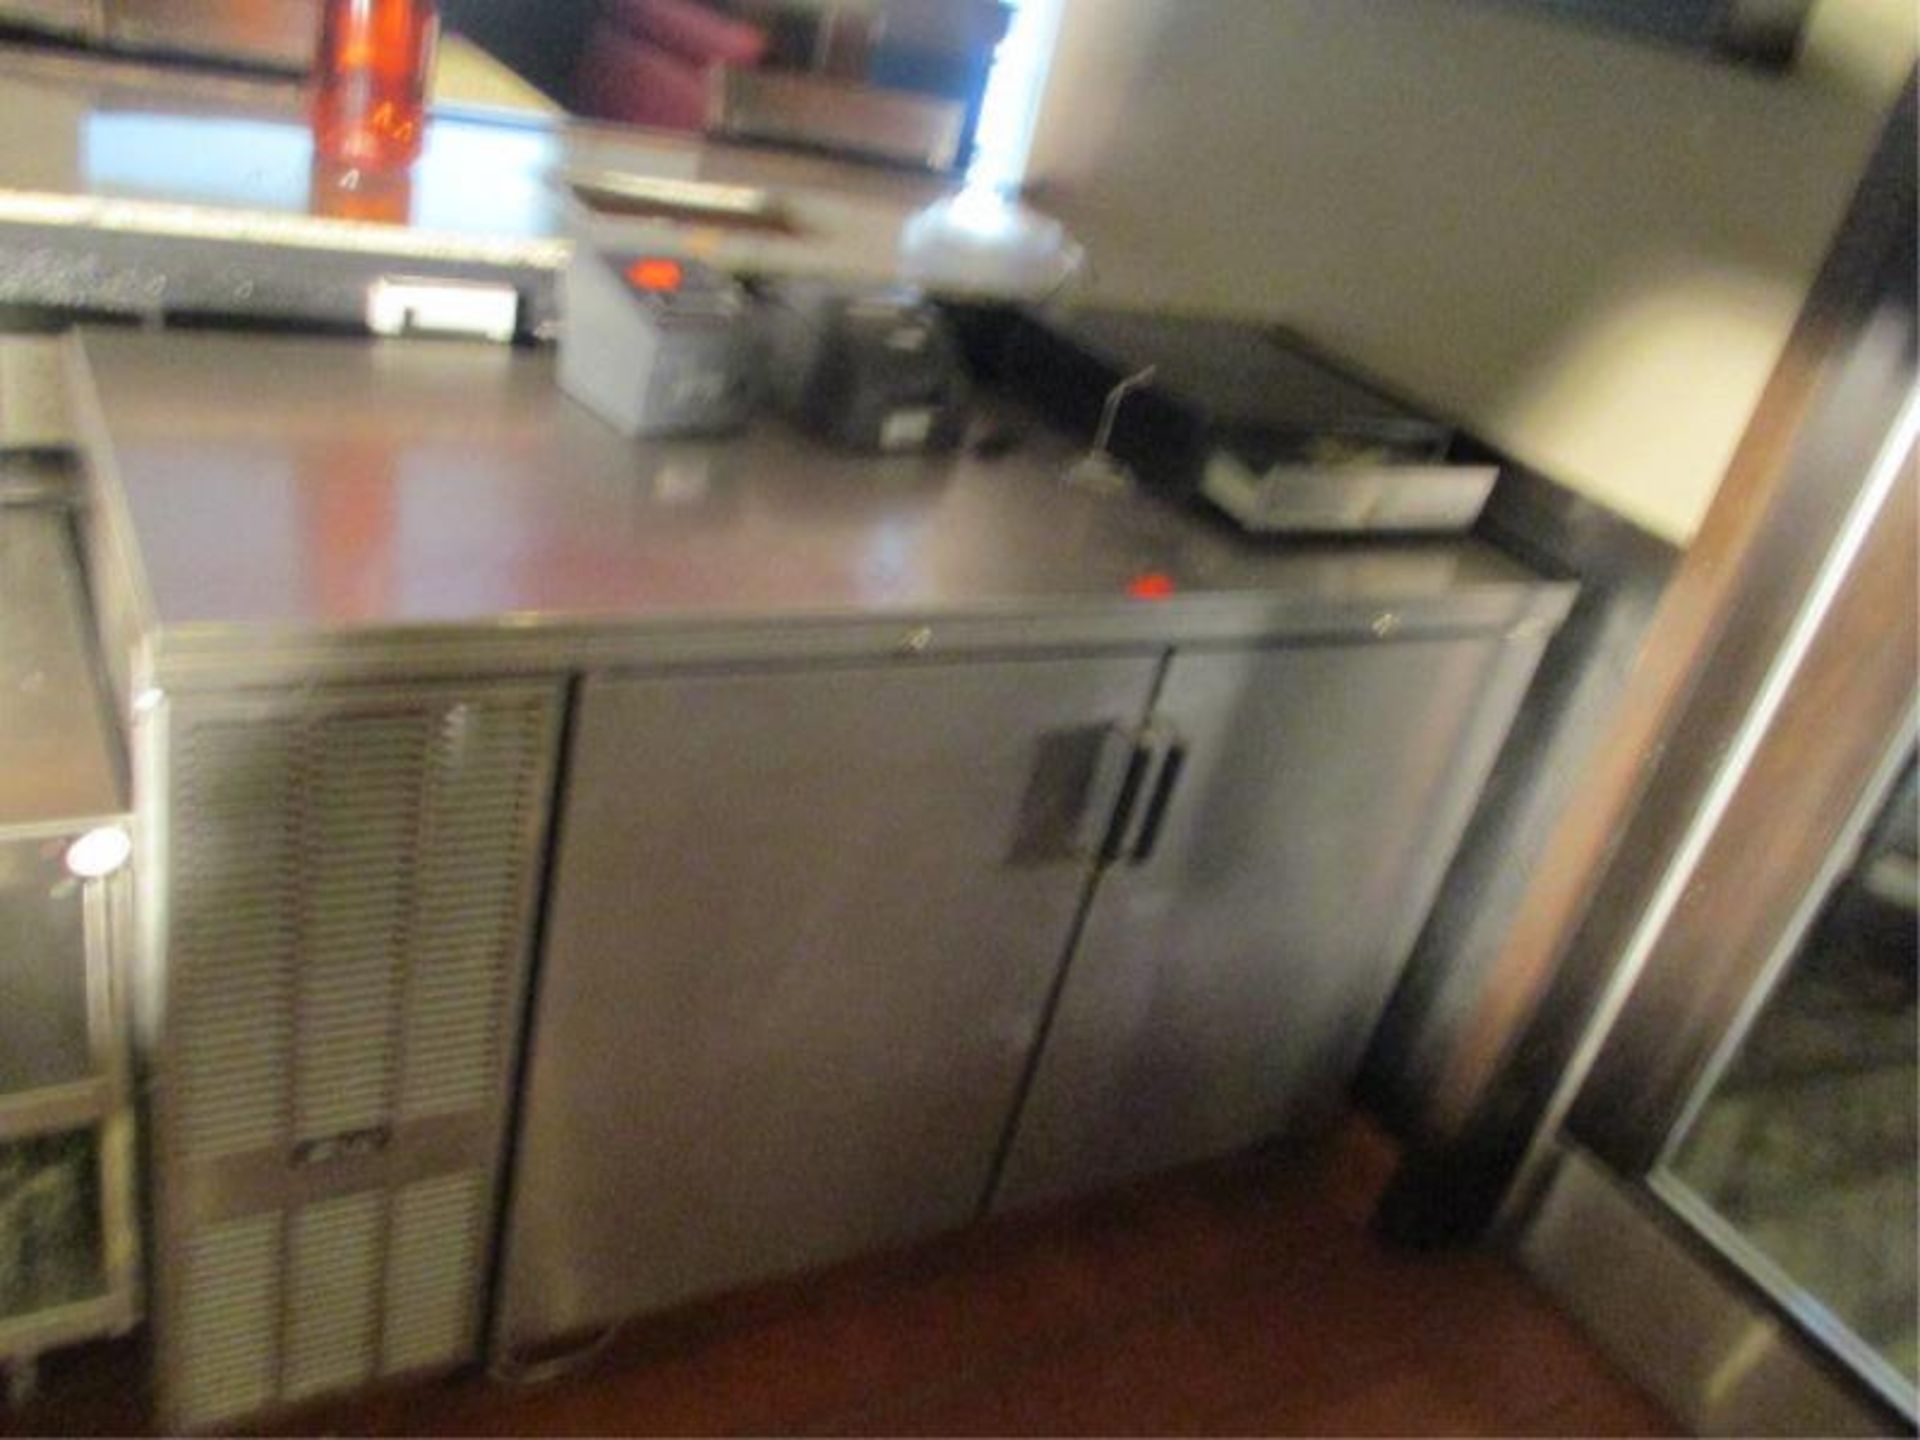 Work Top Refrigerator, 2 Door, By Perlick, Model: CS60SS, SN: 610875